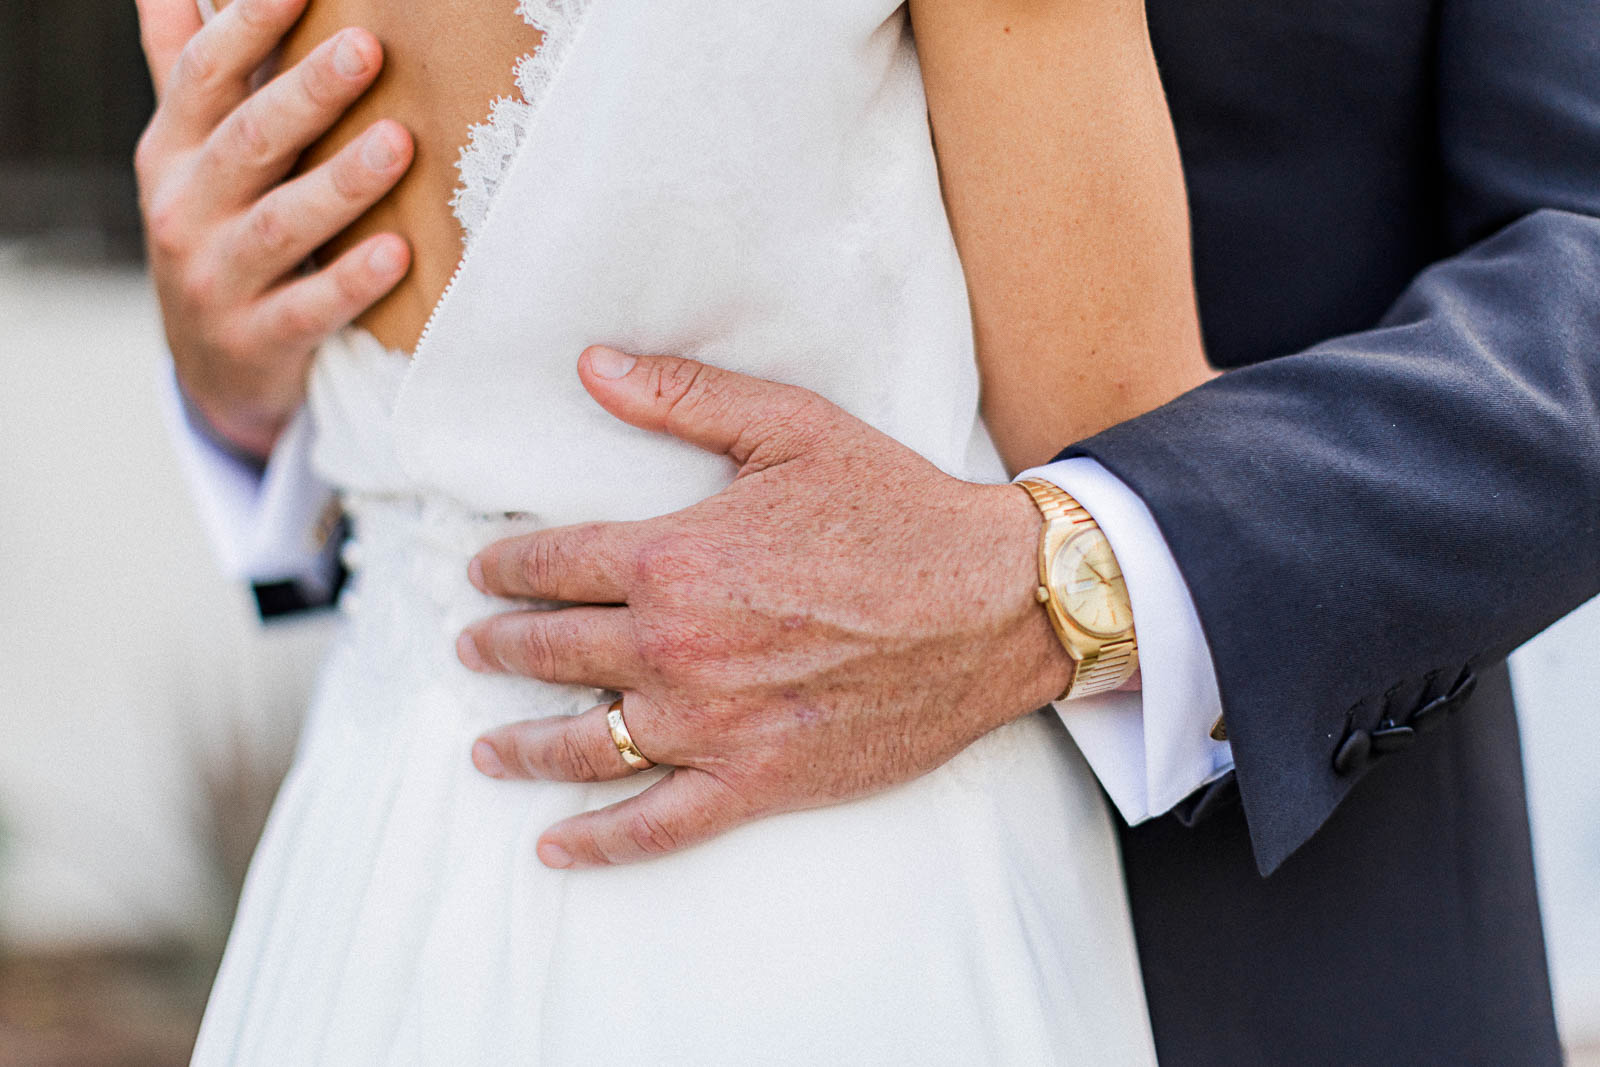 Photographie de Mathieu Dété, photographe de mariage à Saint-Leu sur l'île de la Réunion 974, présentant les détails des mains du marié avec son alliance, enlaçant la taille de la mariée